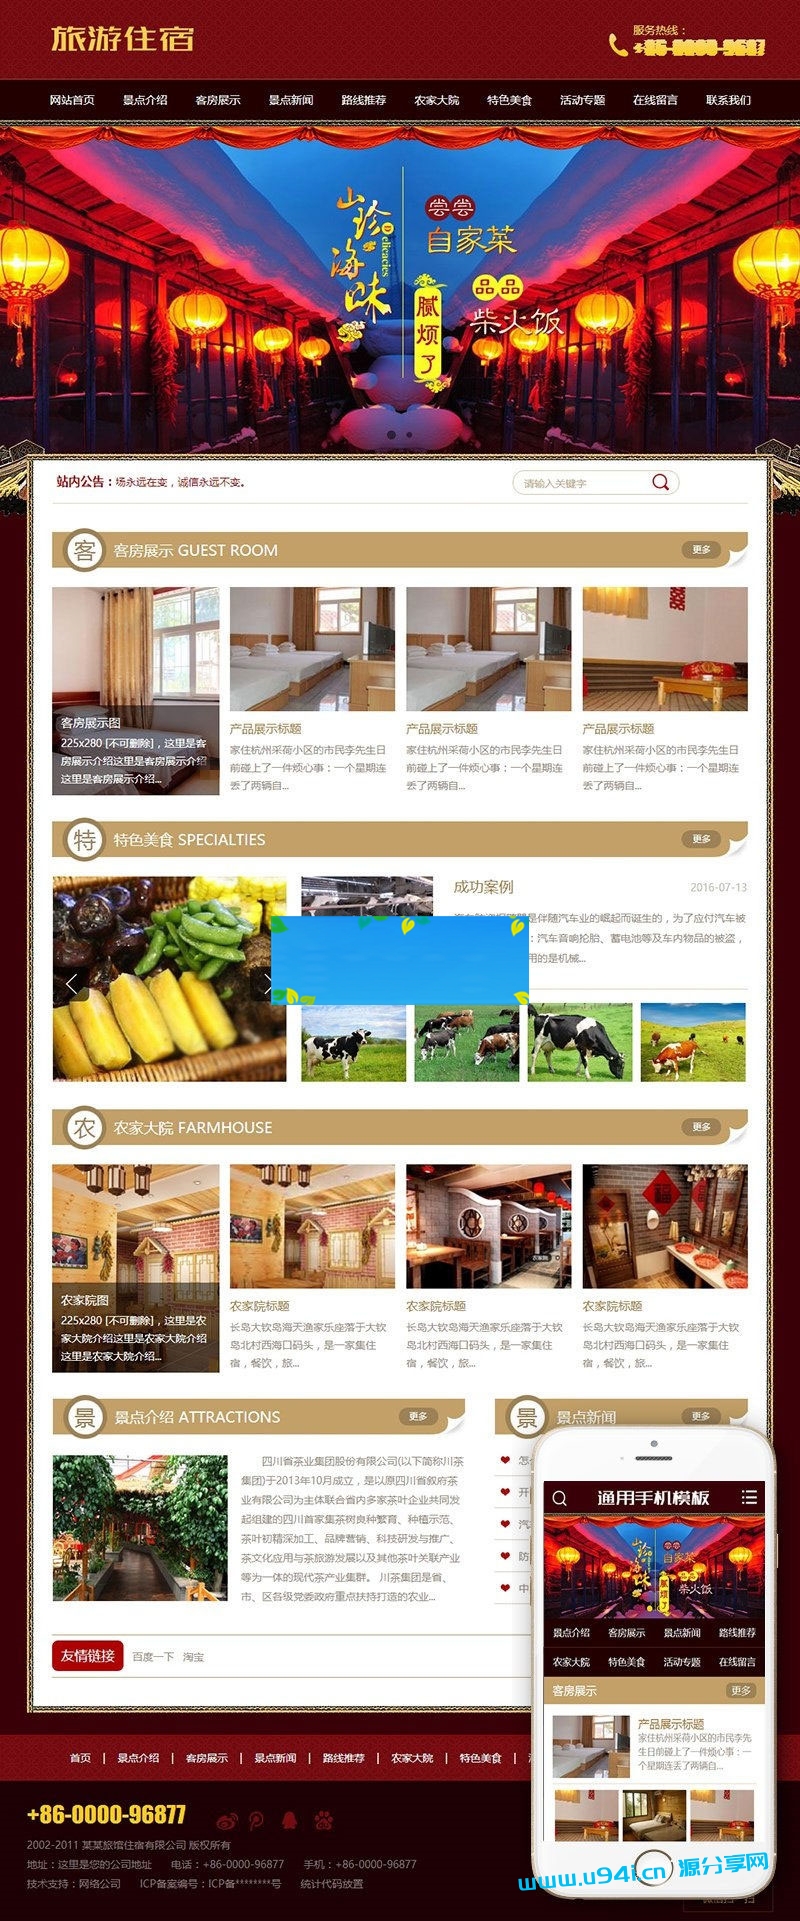 织梦dedecms古典中国风旅游住宿农家乐网站模板(带手机移动端)